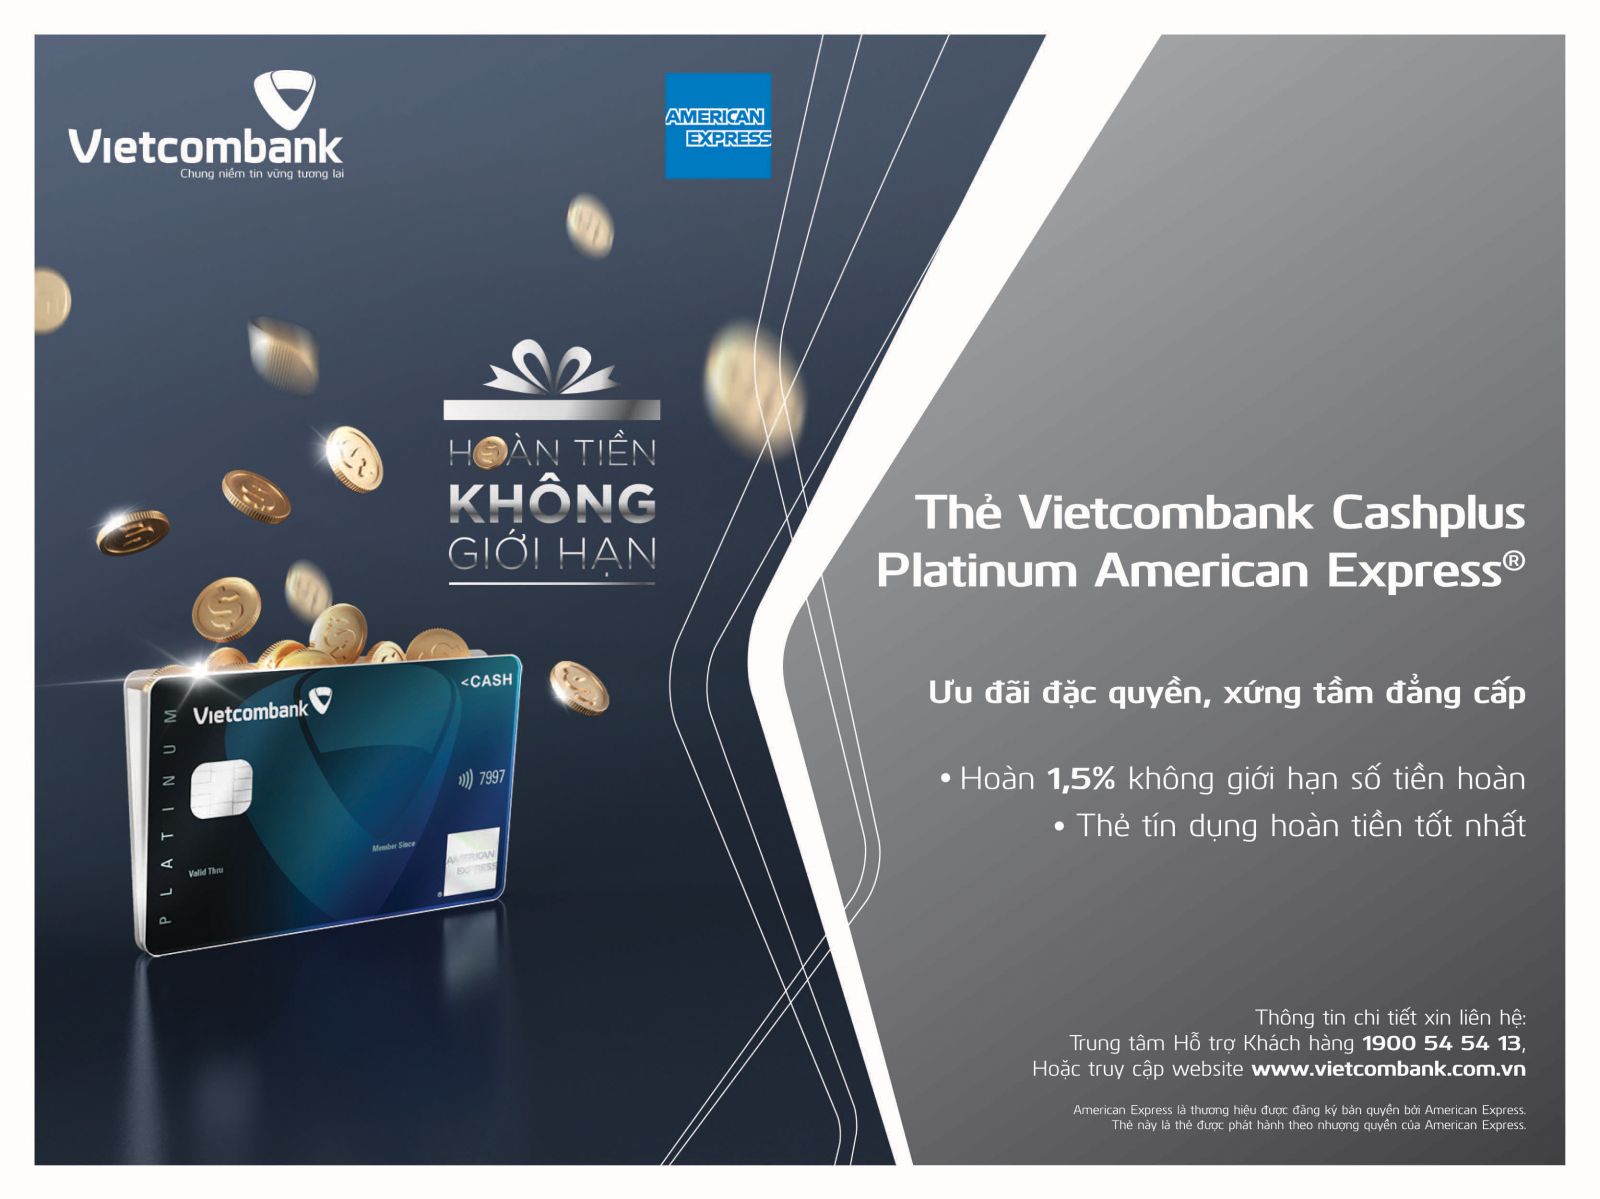 Thẻ Vietcombank Cashplus Platinum American Express là sản phẩm thẻ cao cấp với những ưu đãi đặc quyền vượt trội về phong cách sống đẳng cấp được Vietcombank và American Express chính thức ra mắt vào cuối tháng 12/2018